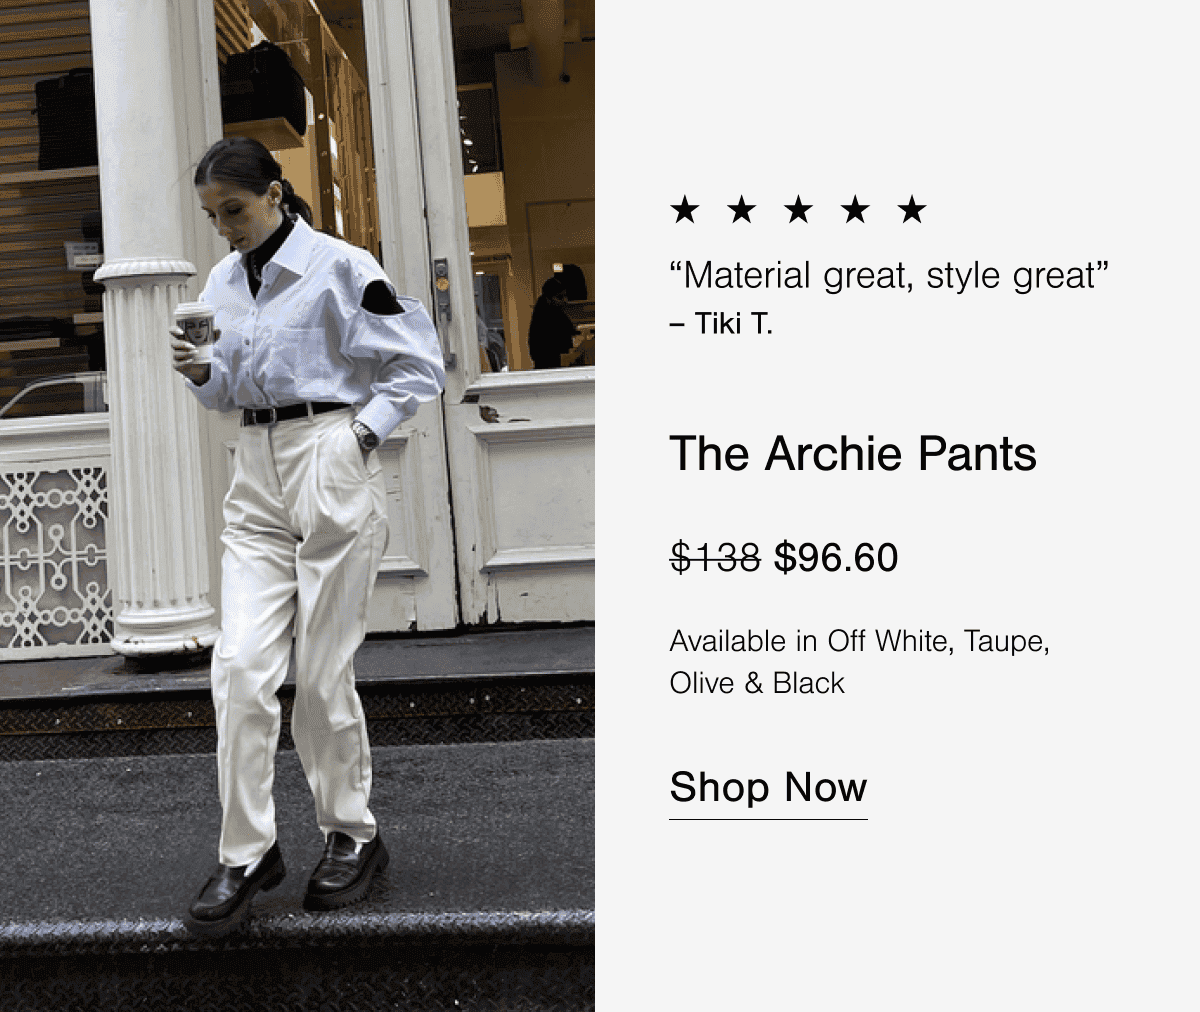 The Archie Pants